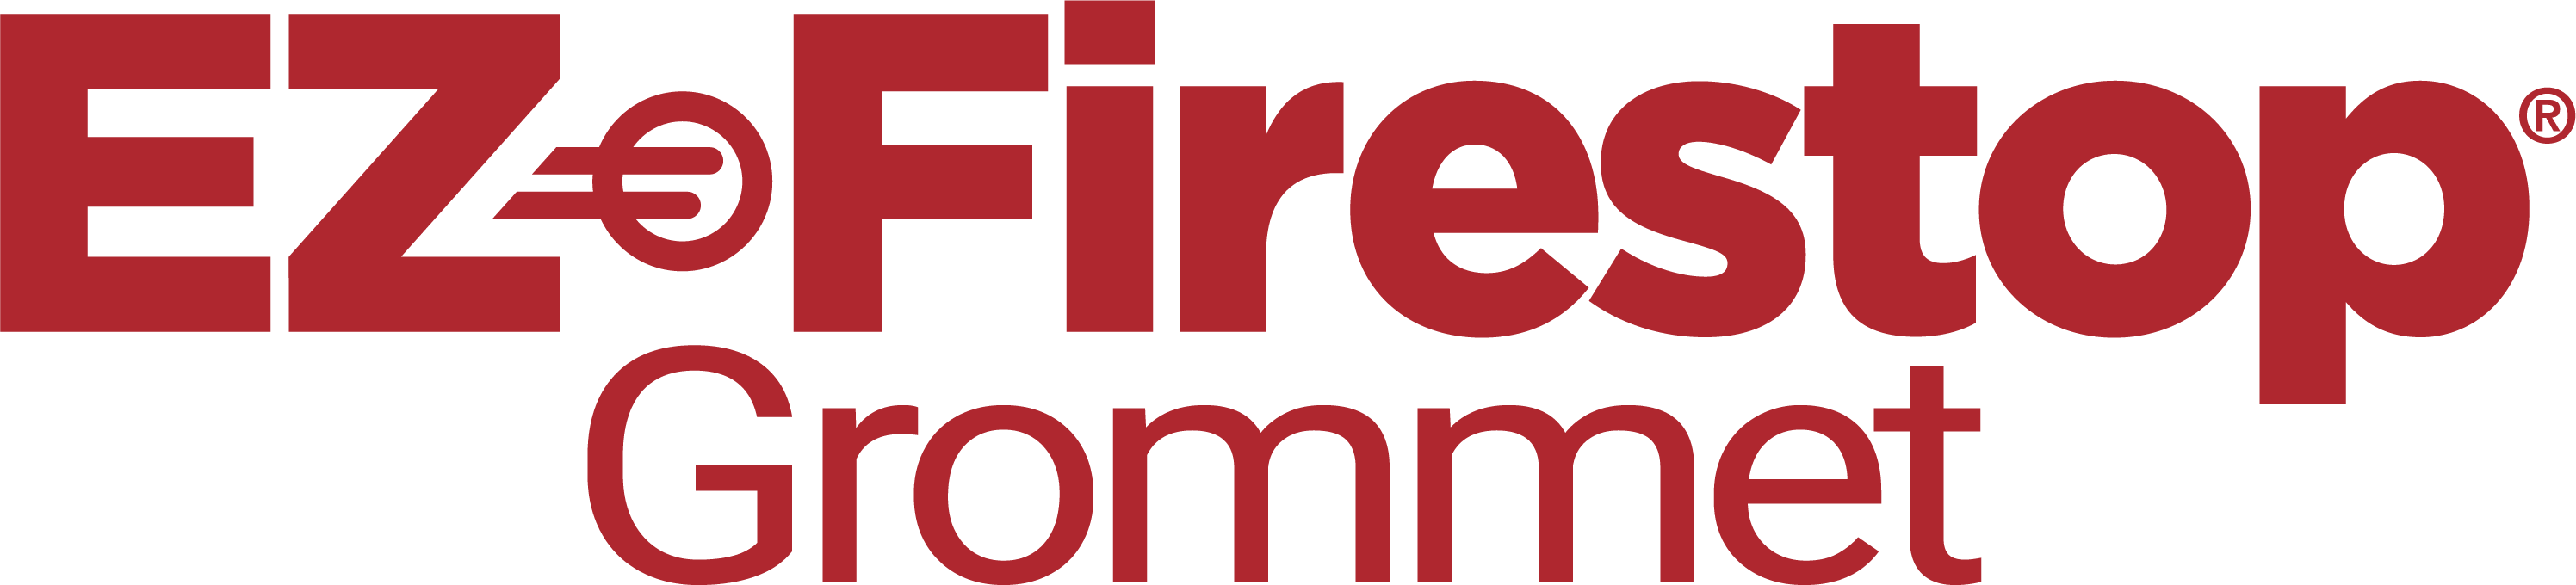 EZ_Firestop_Grommet_logo-Redpng